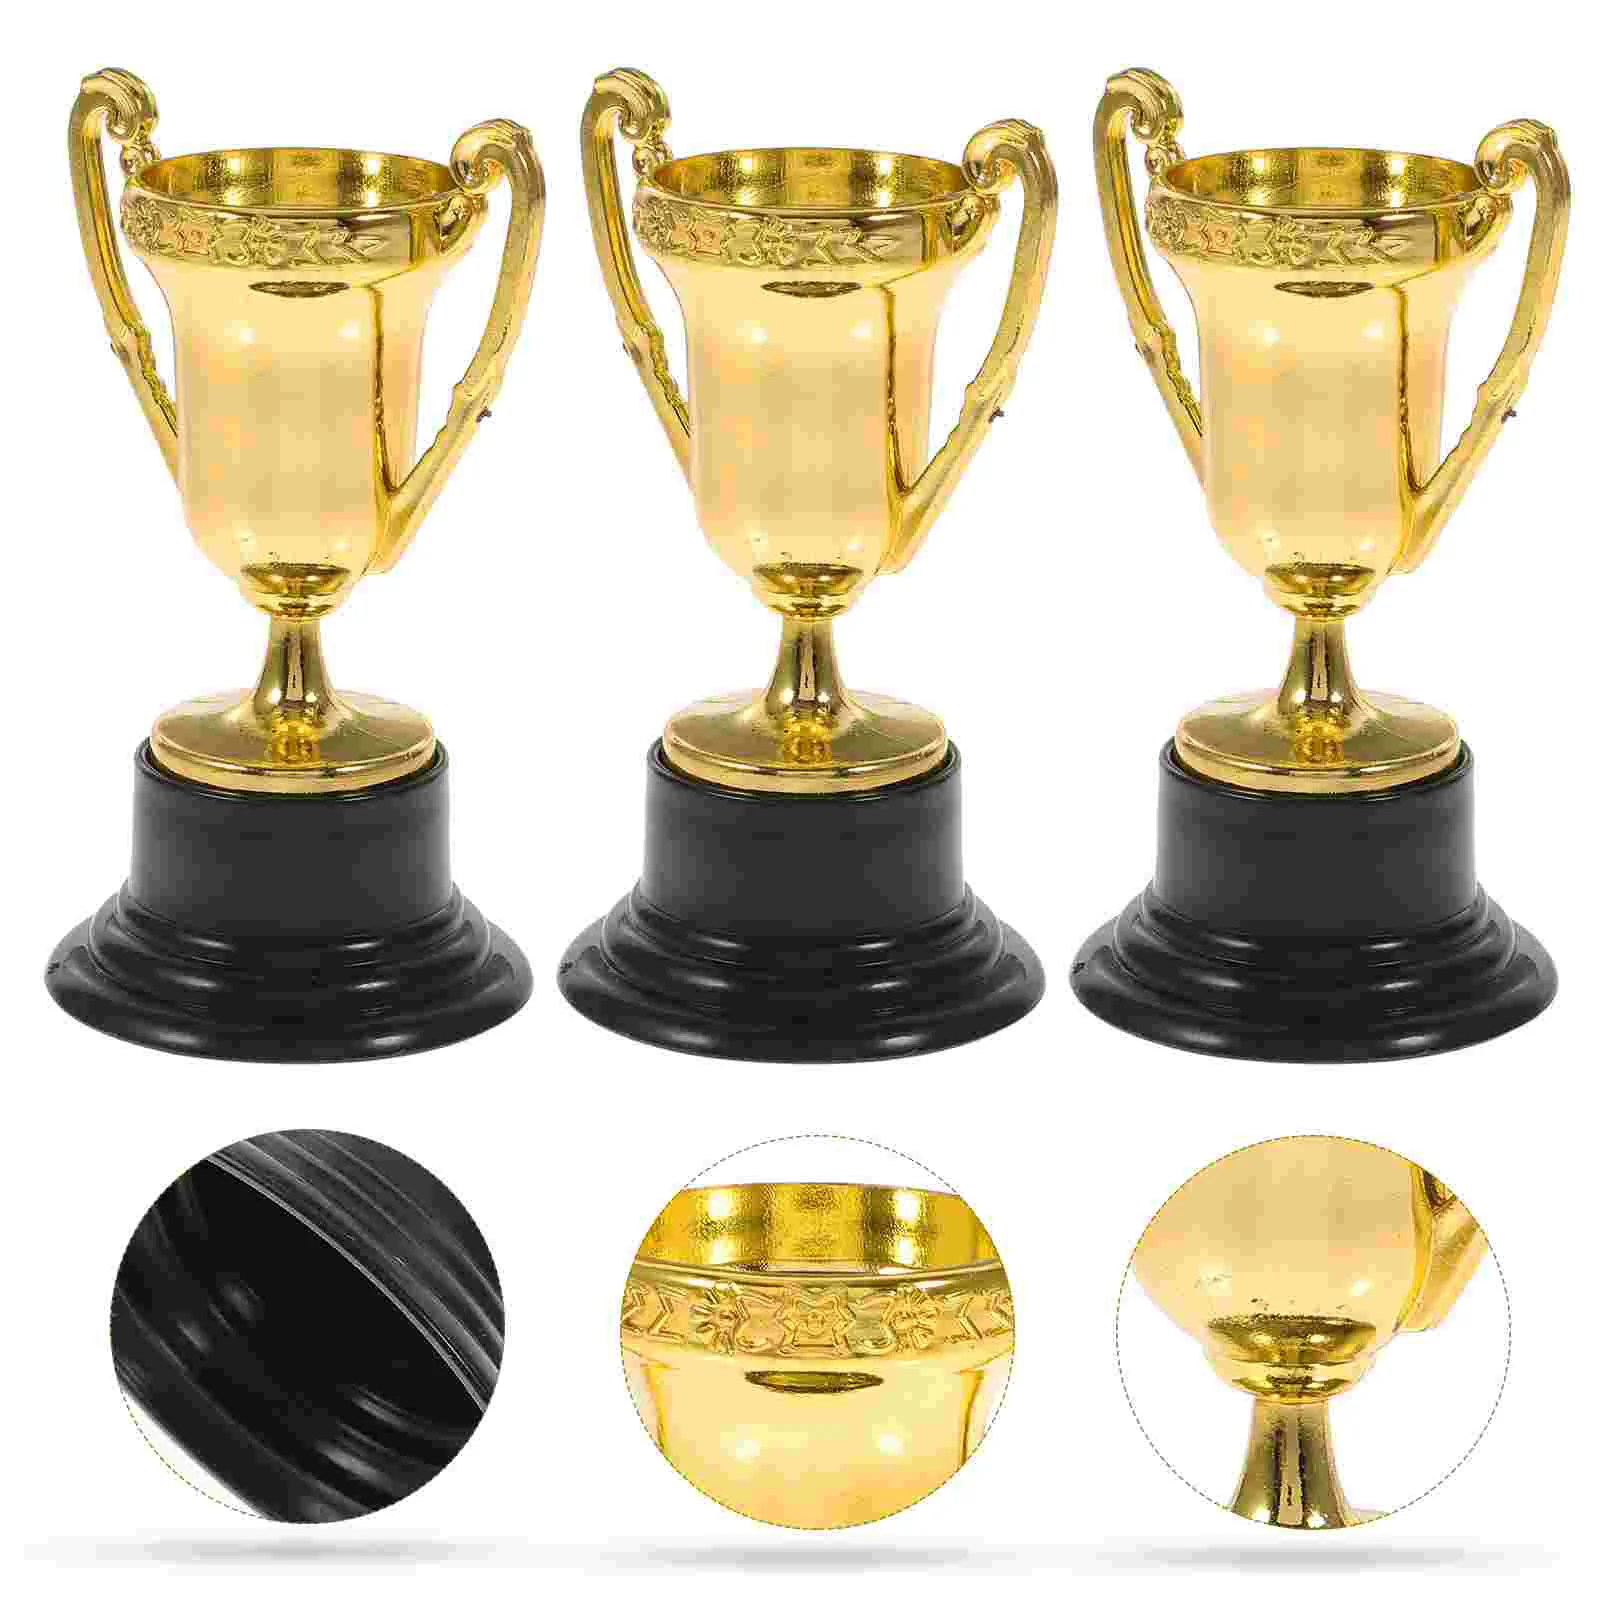 Mini tazze d'oro in plastica trofei per feste bambini giocattoli per l'apprendimento precoce premi premio trofeo per le vacanze dei bambini omaggio